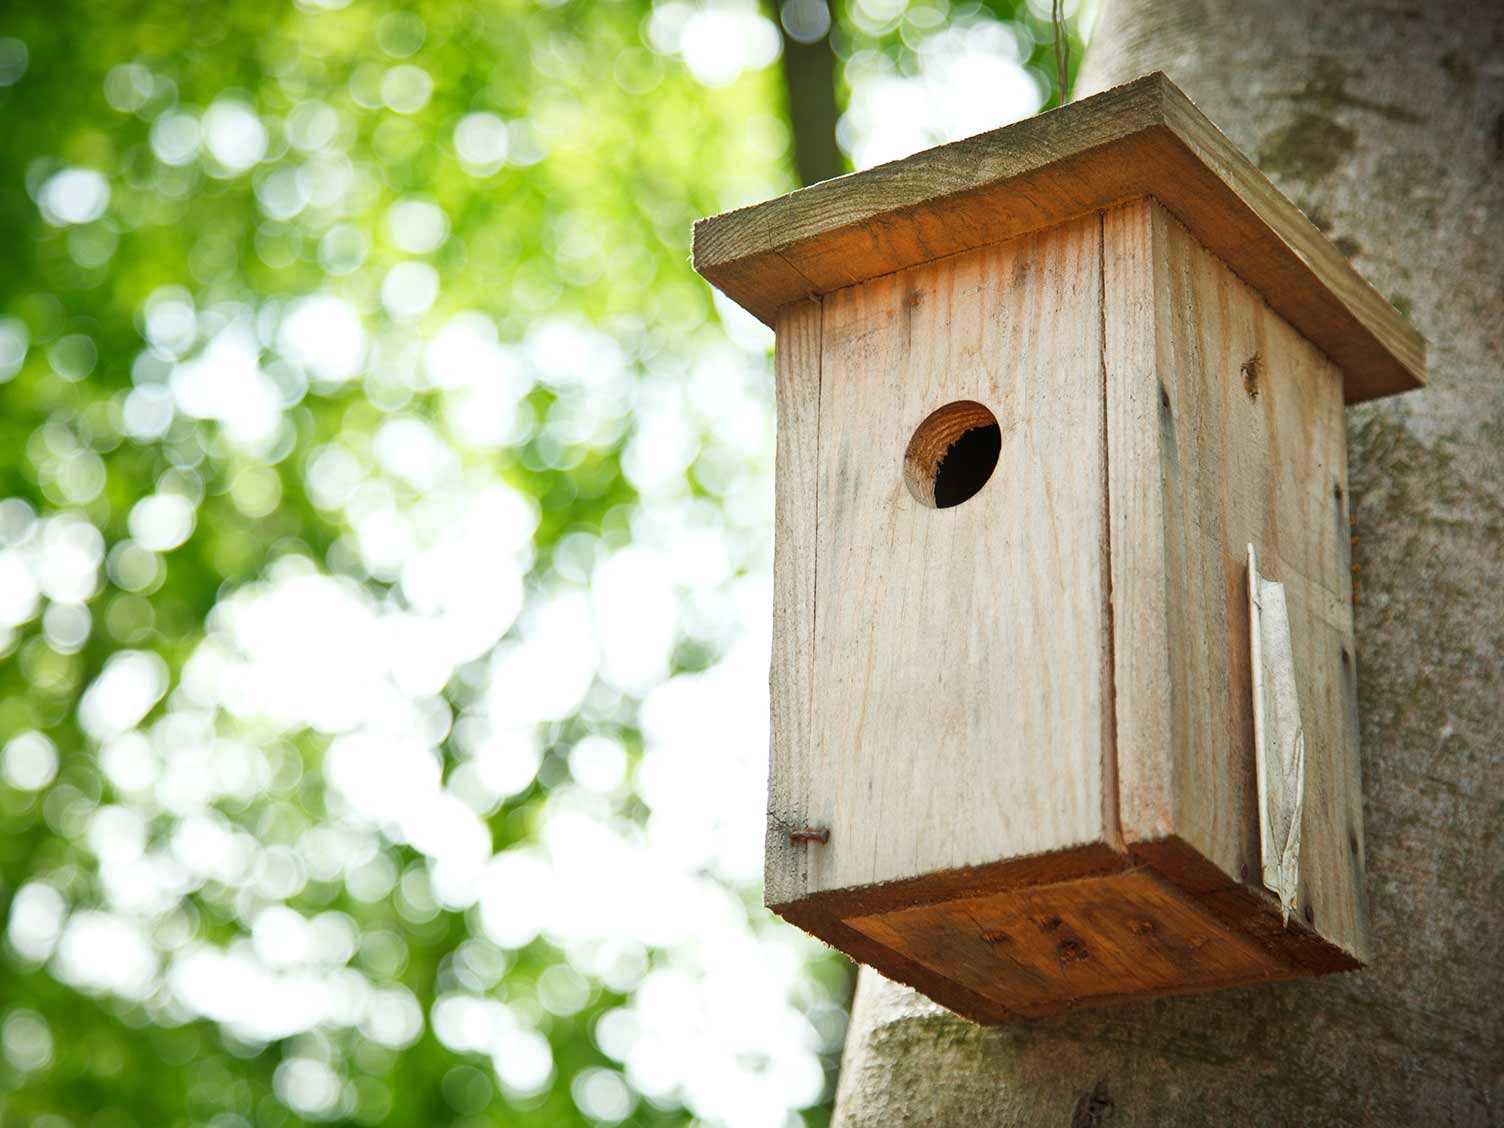 Small hole bird box